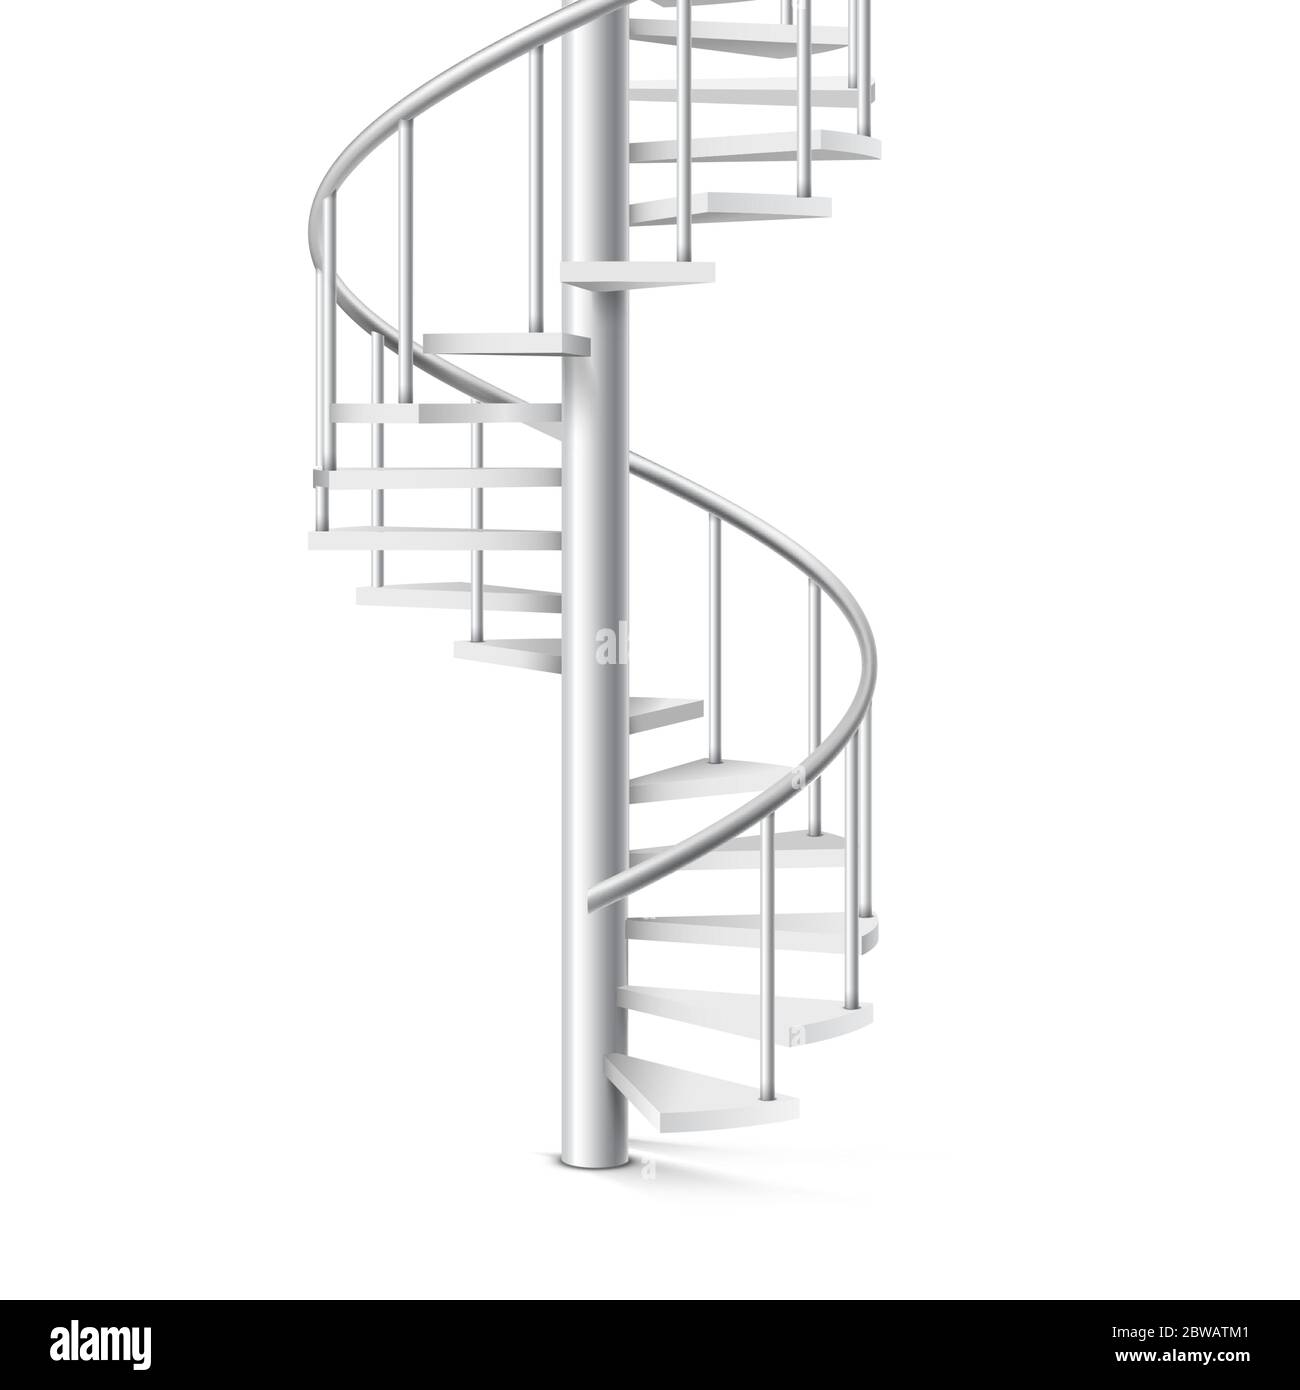 Escalier en spirale objet 3d réaliste sur fond blanc Illustration de Vecteur